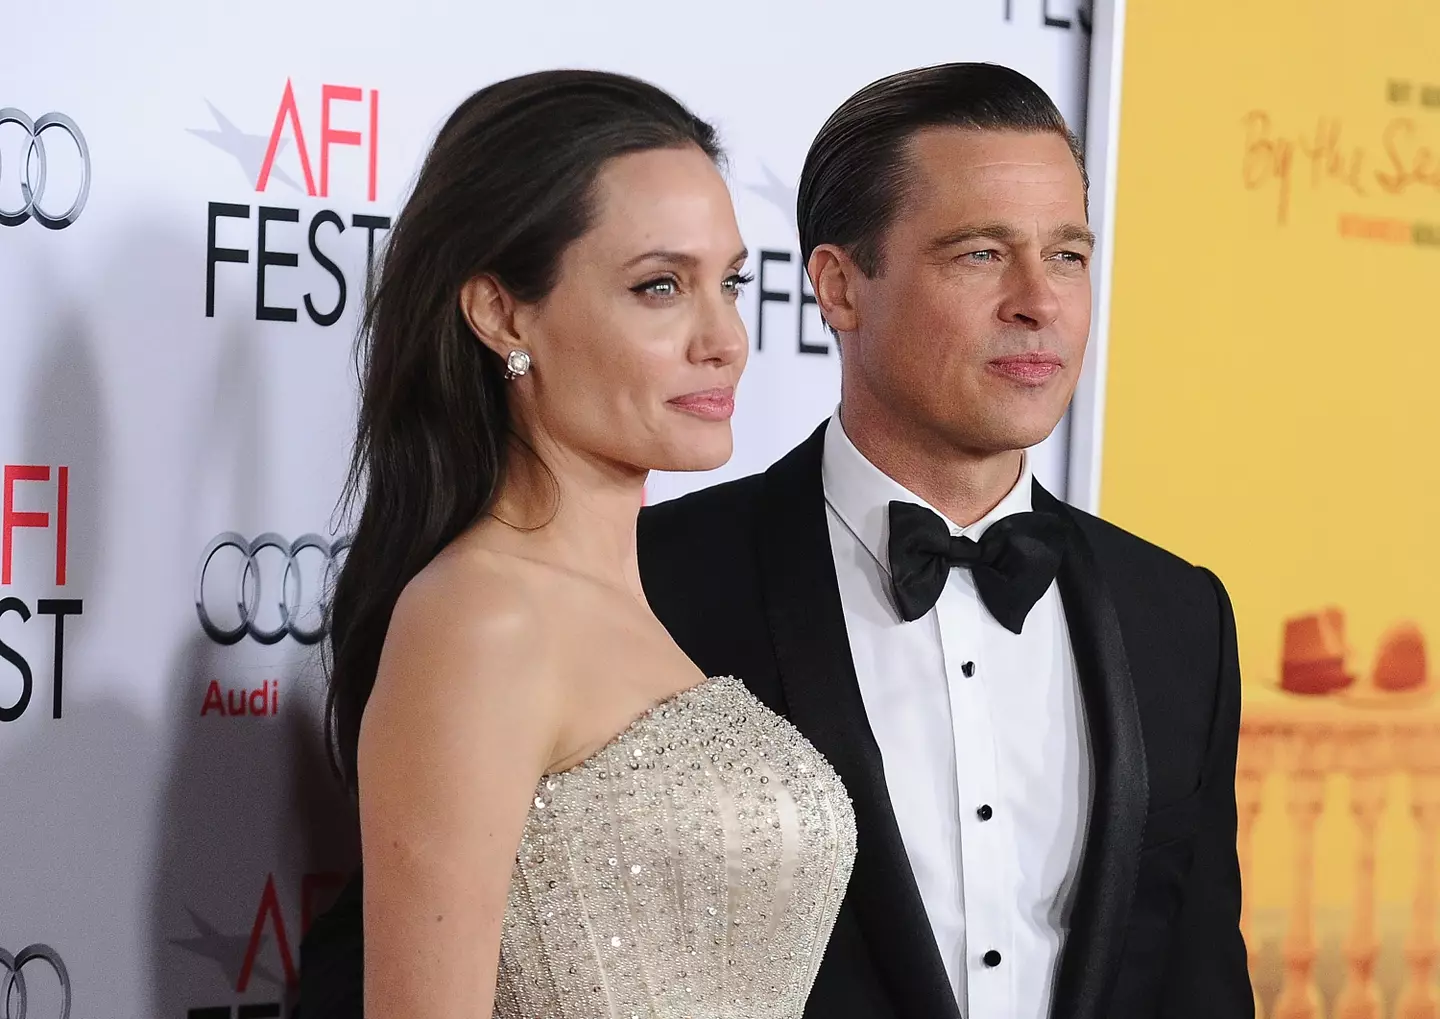 Jolie filed for divorce in 2016.